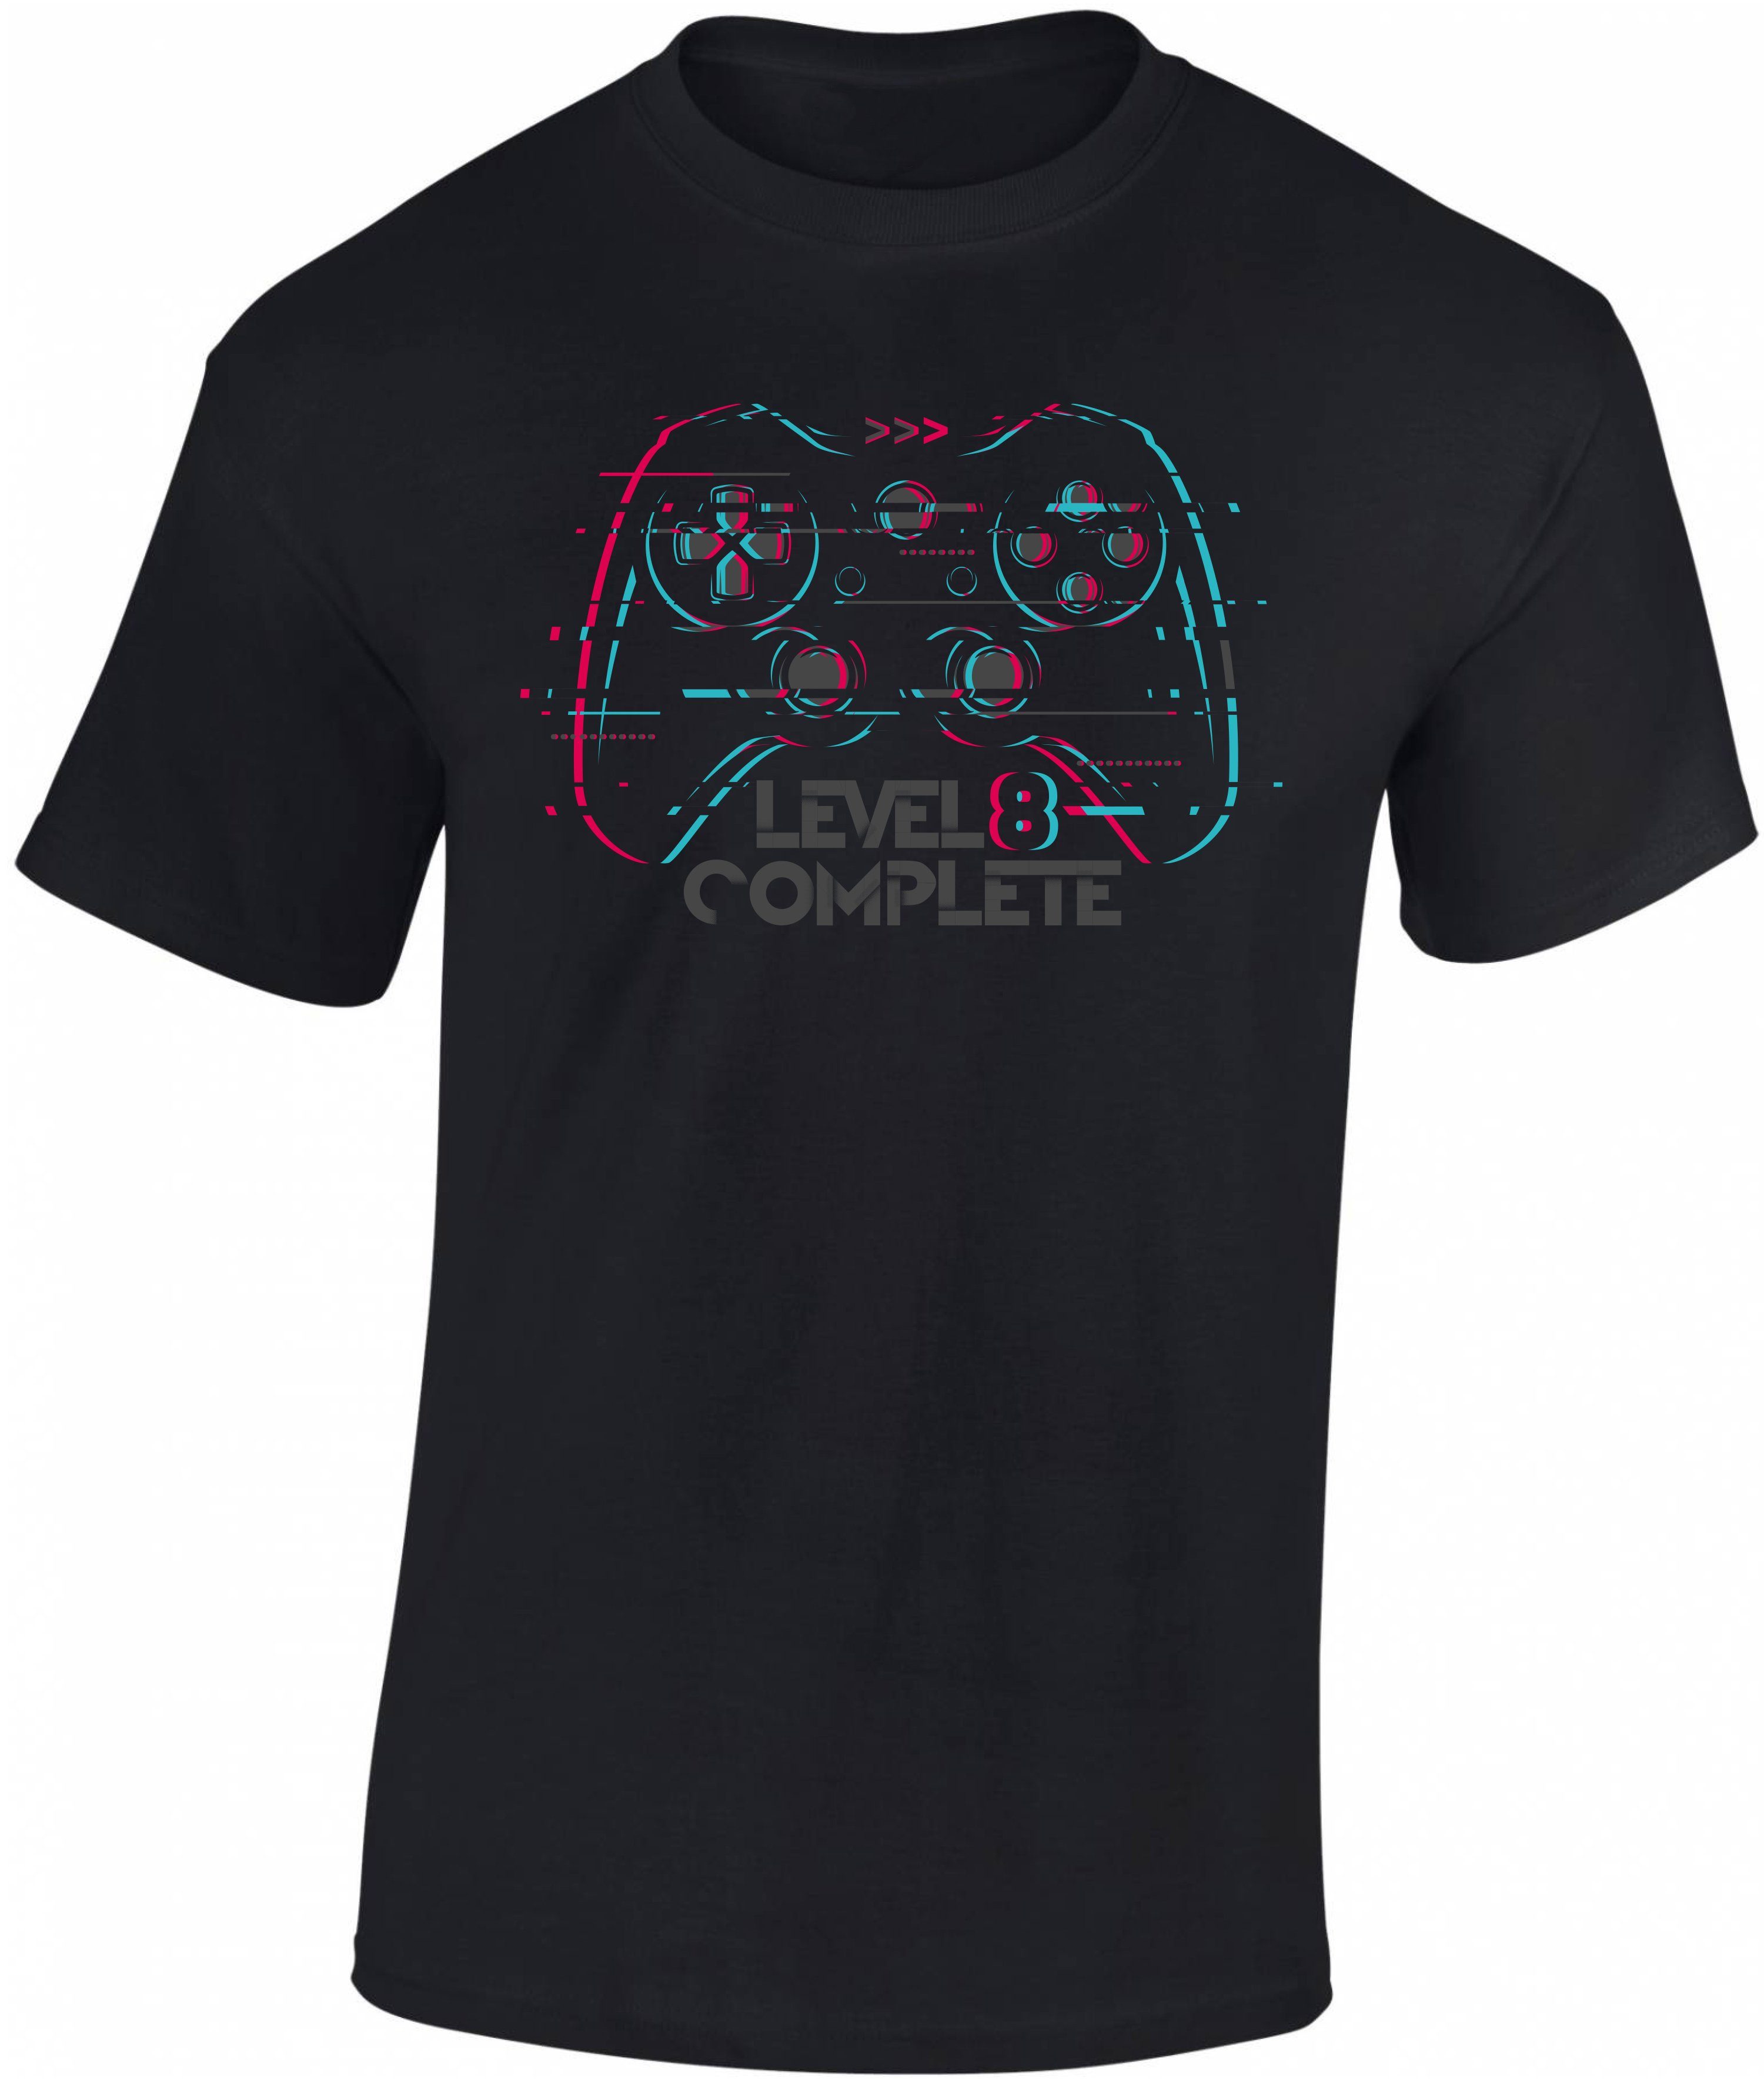 Level hochwertiger : 8. Baumwolle Jungen Baddery Geburtstag aus Complete Print-Shirt Siebdruck, zum T-Shirt Gamer 8